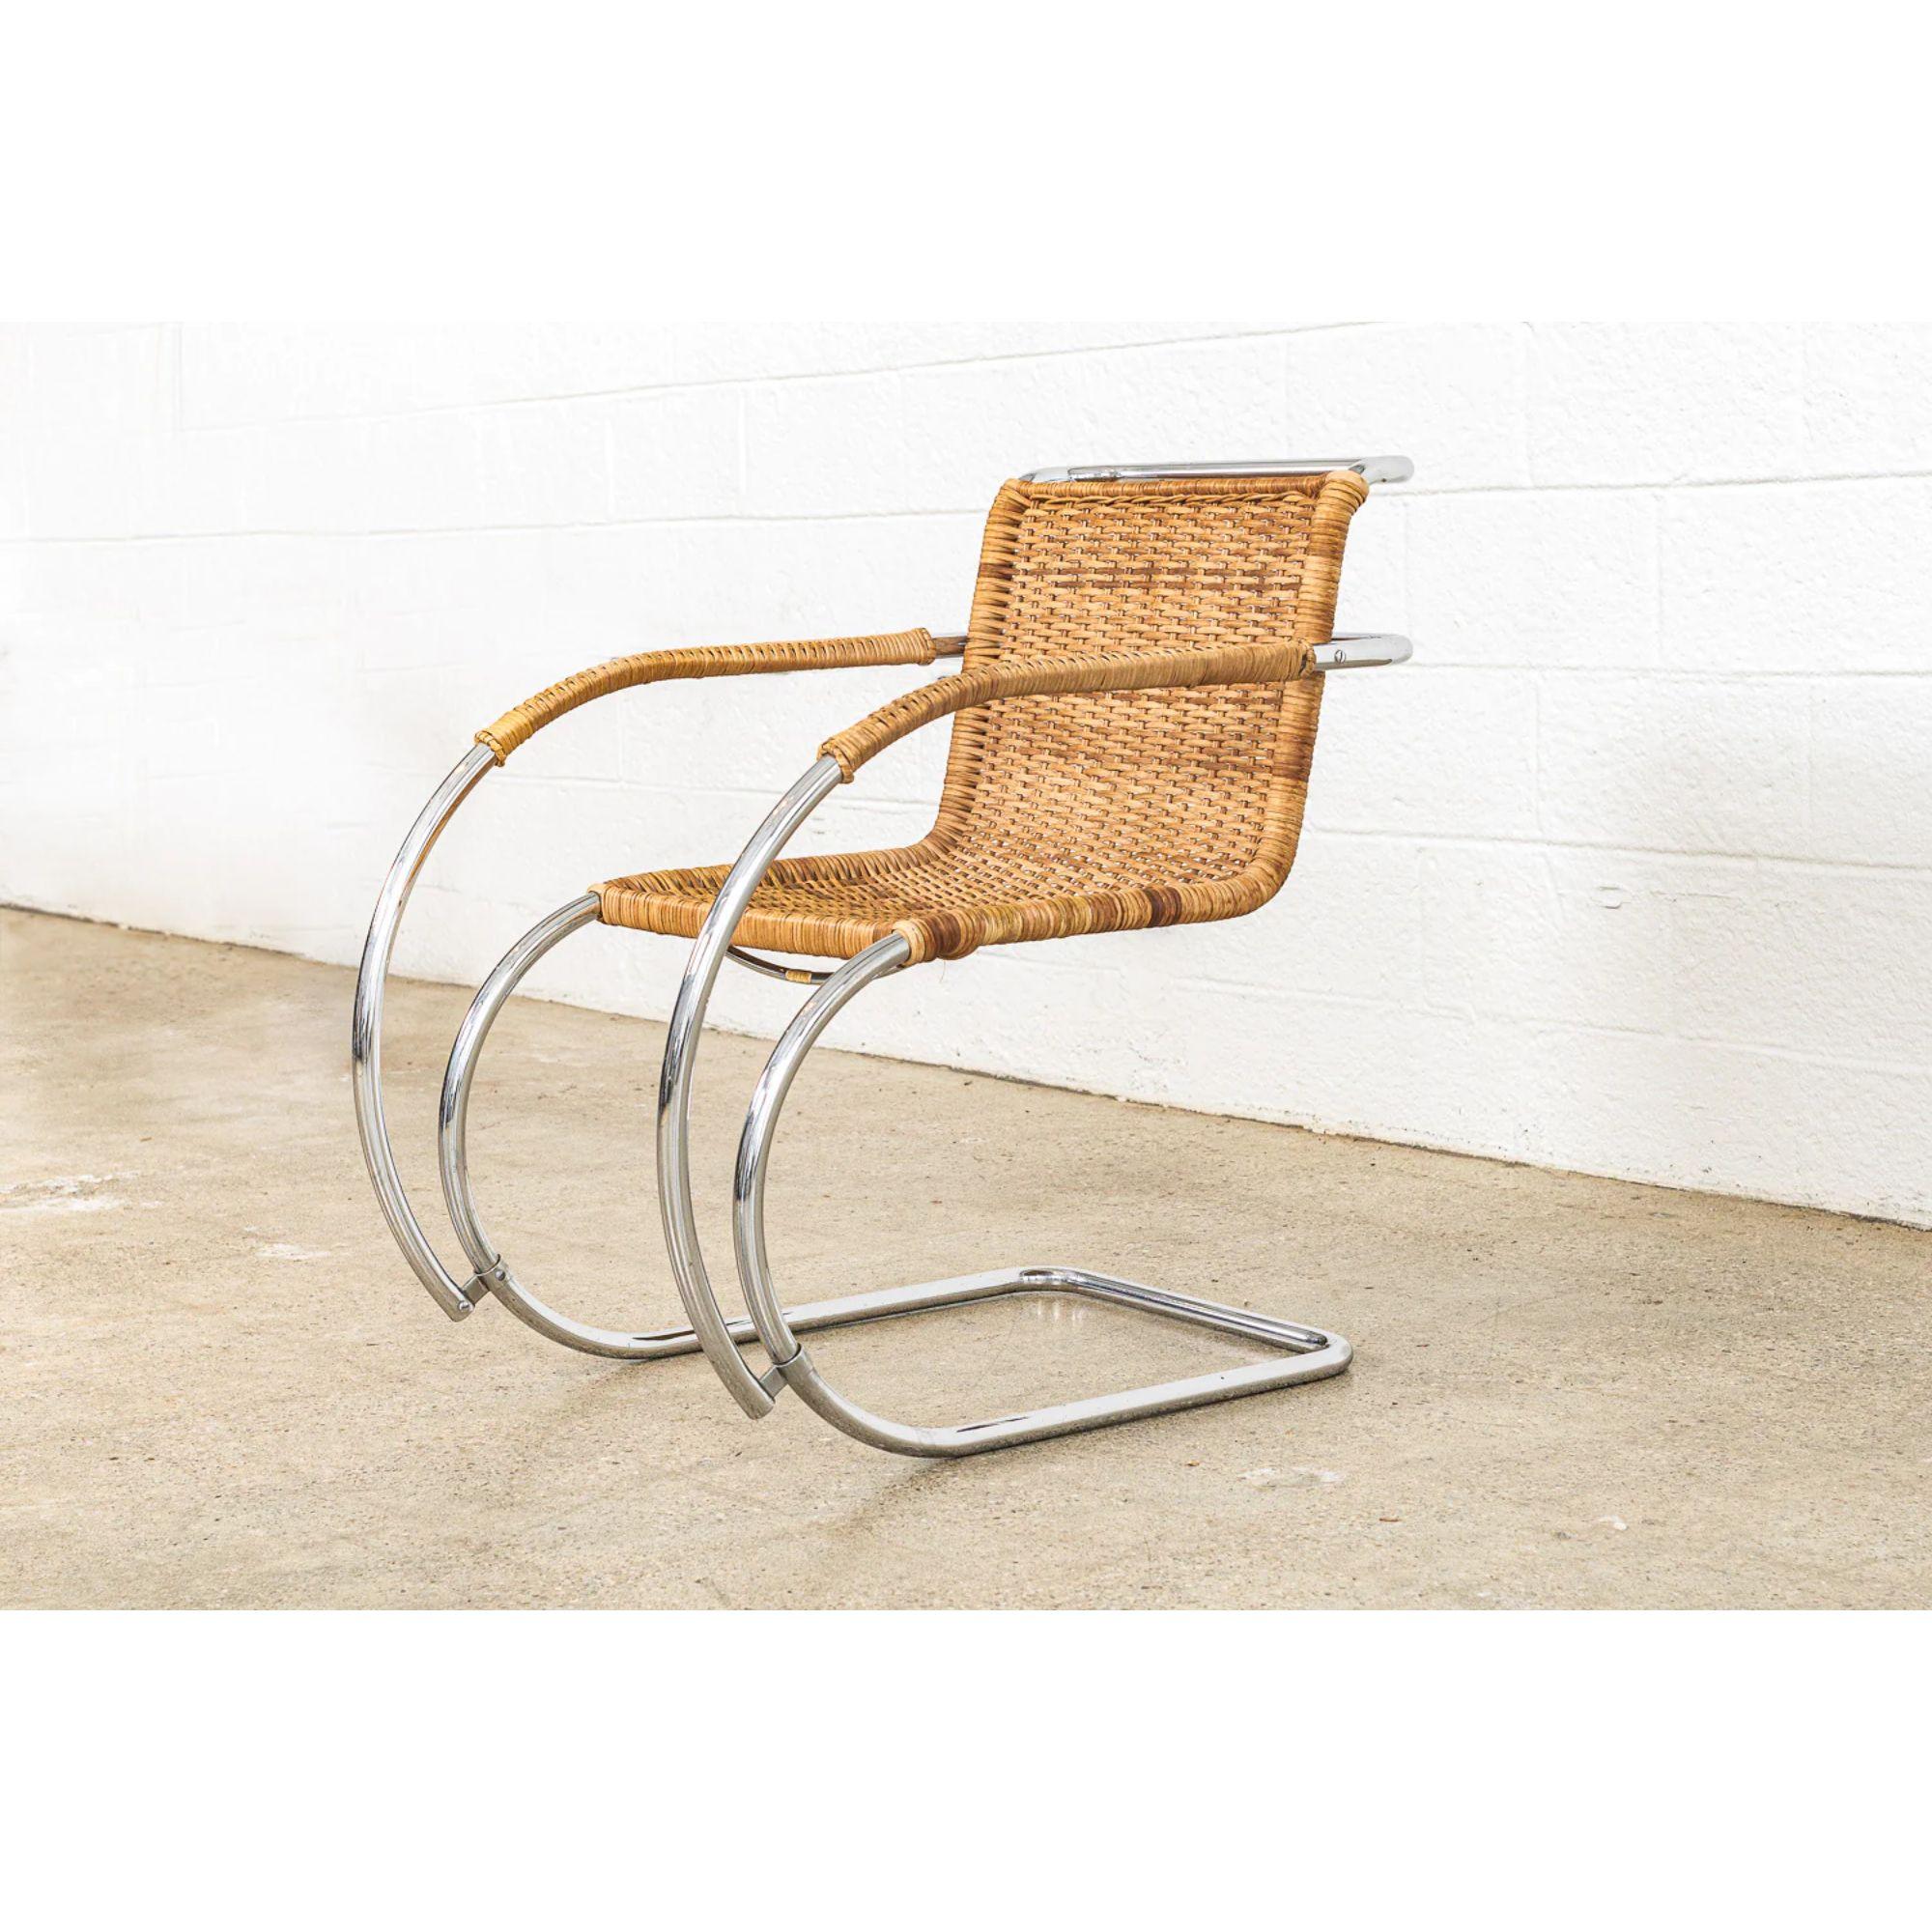 Ce fauteuil cantilever MR 20 de Mies van der Rohe fabriqué par Stendig date d'environ 1970. La chaise MR a été conçue par l'architecte moderniste Ludwig Mies van der Rohe en 1927 dans le cadre de sa contribution à l'exposition Weissenhof de